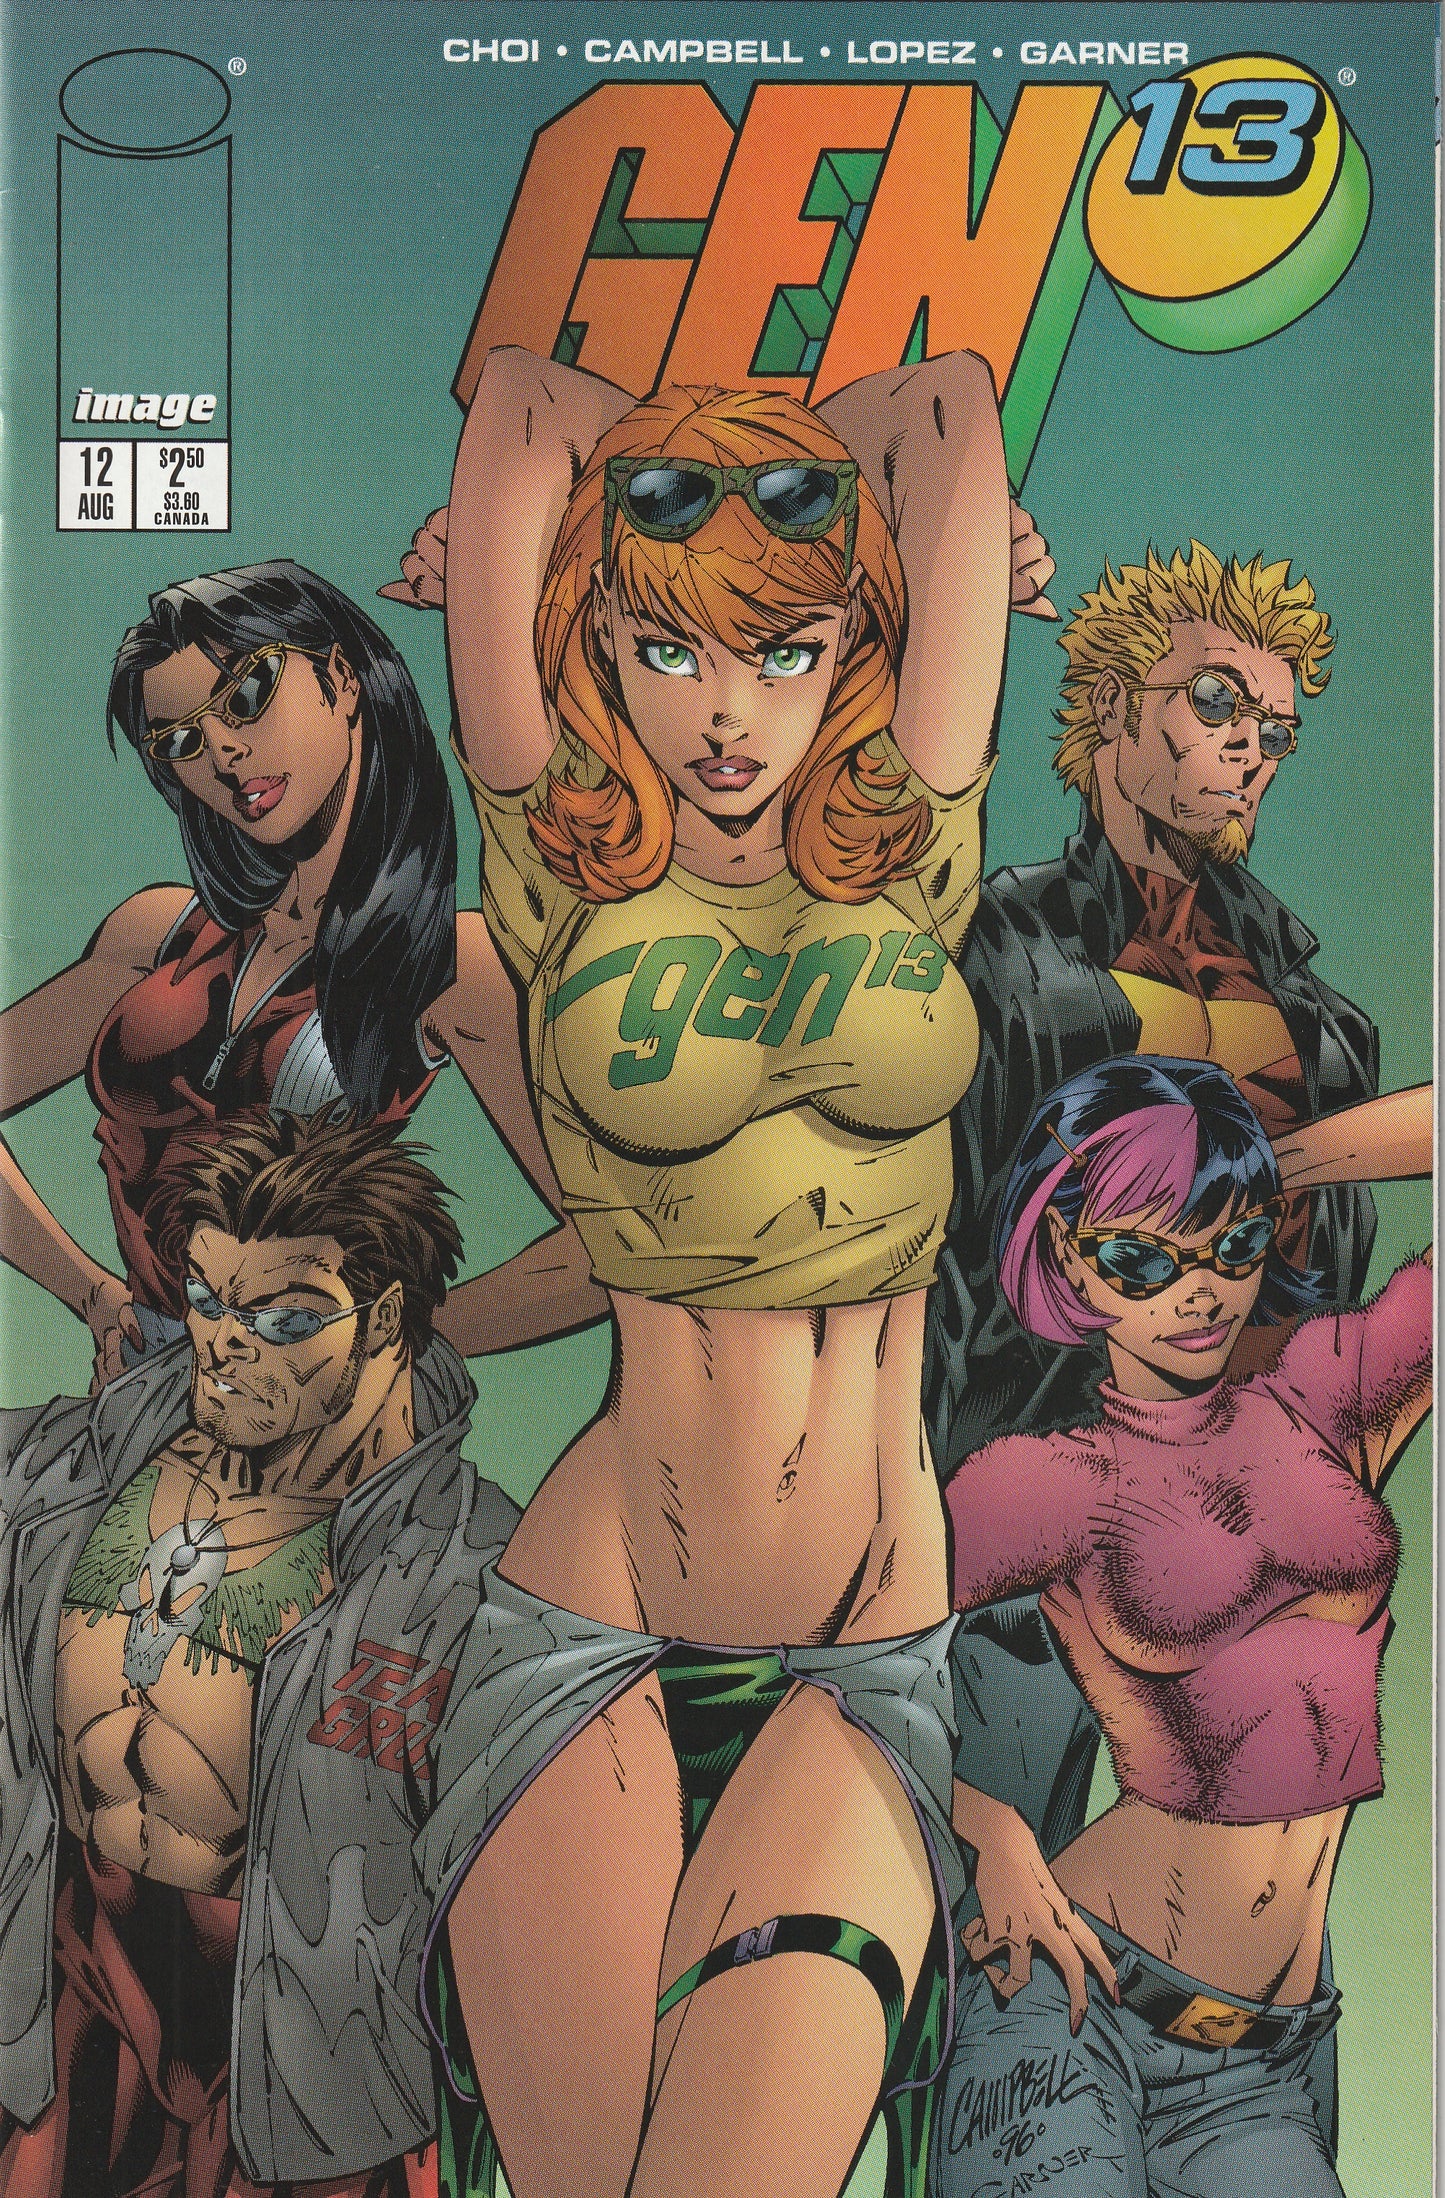 Gen 13 #12 (Volume 2, 1996) - J. Scott Campbell Cover Art featuring Caitlin Fairchild